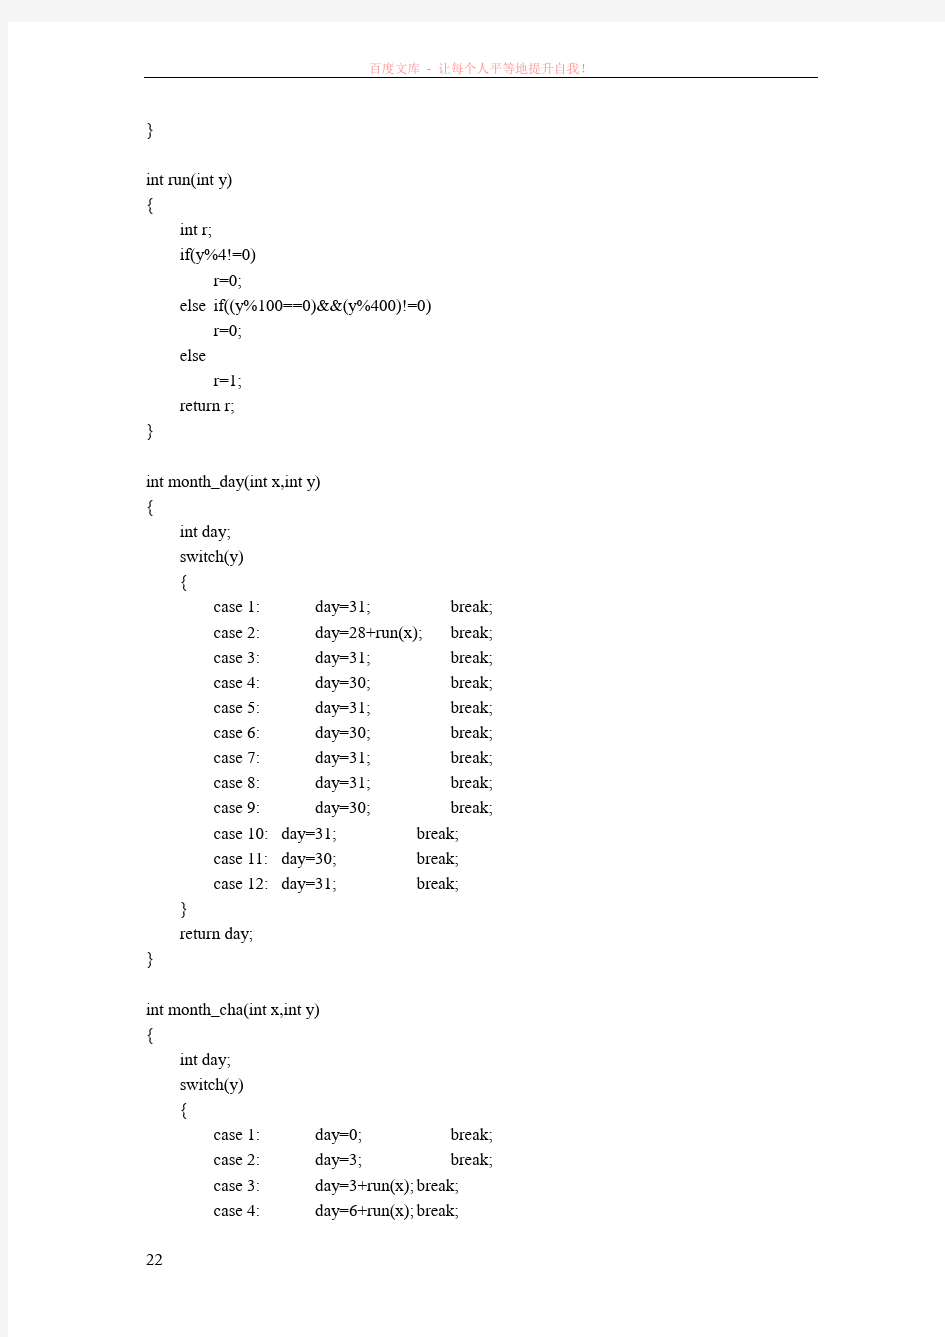 c语言基础代码编写的简单的万年历程序